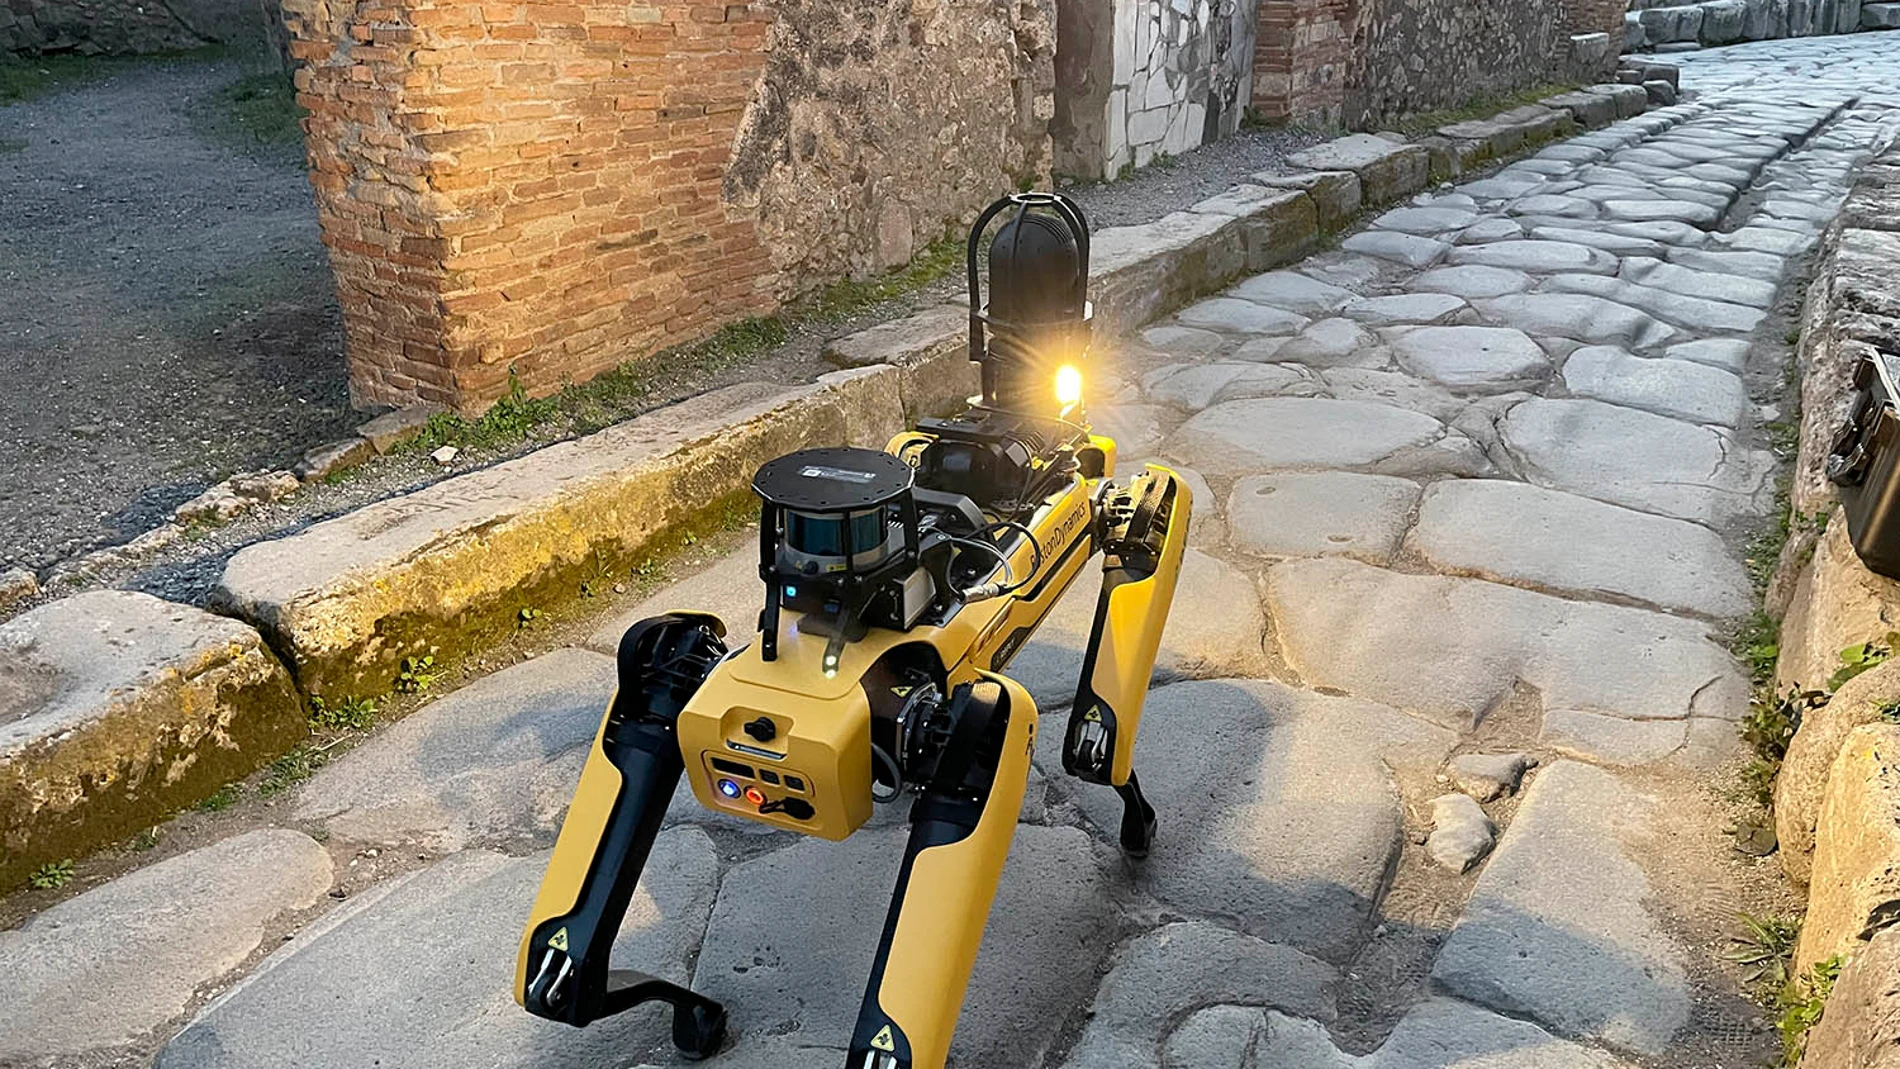 El Parque Arqueológico de Pompeya, la ciudad sepultada por la erupción del Vesubio en el año 79, se ha dotado de "Spot", un pequeño robot cuadrúpedo